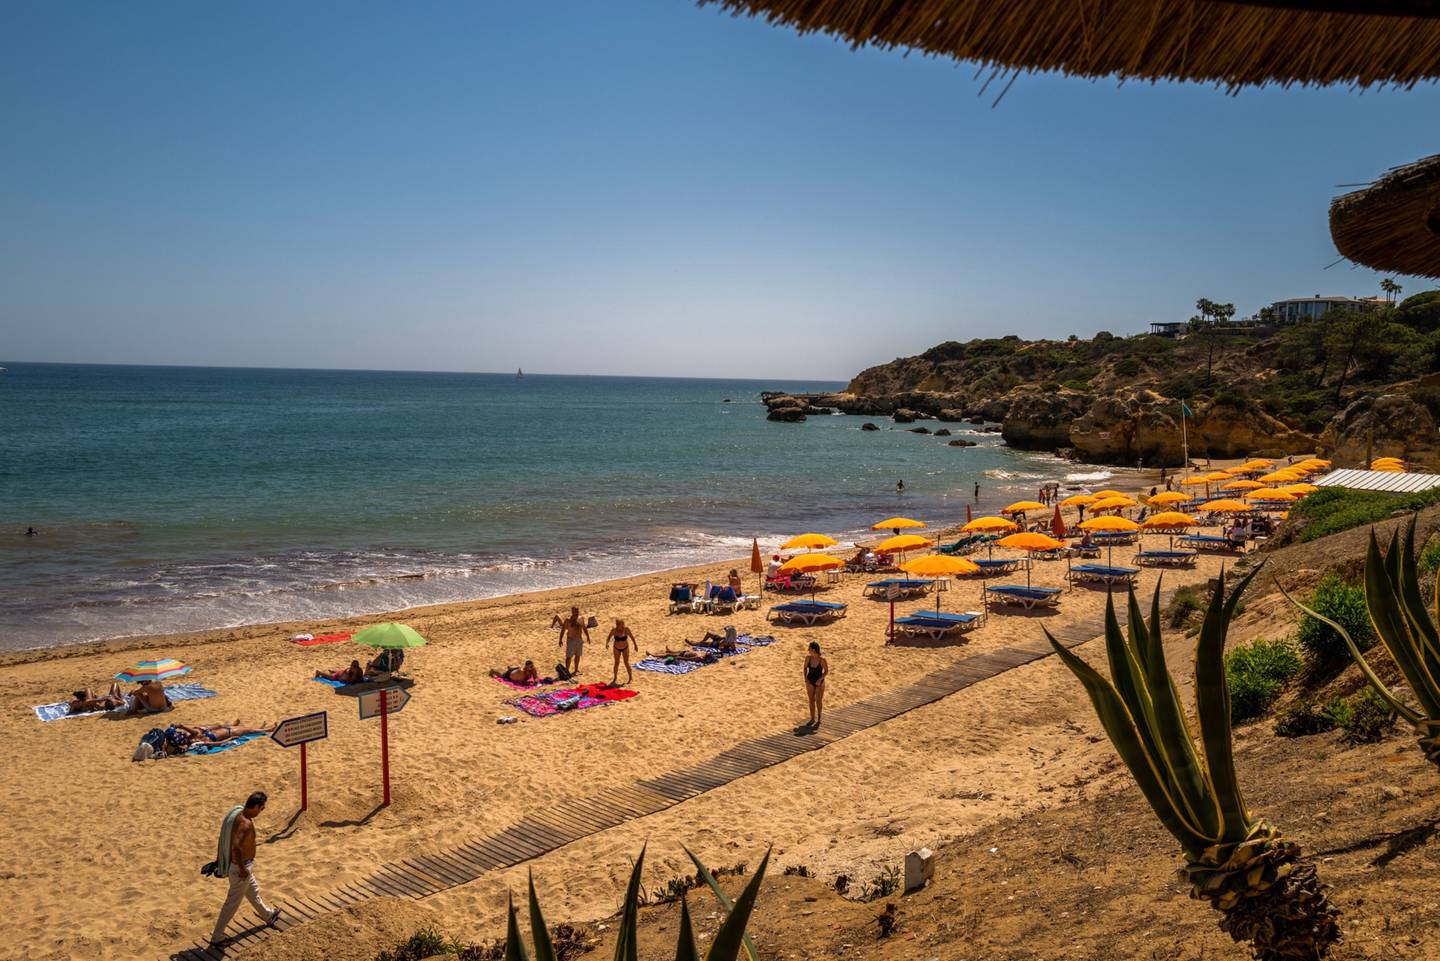 Región del Algarve. Los bañistas se relajan en la playa de Oura en Albufeira, Portugal, el sábado 29 de mayo de 2021.